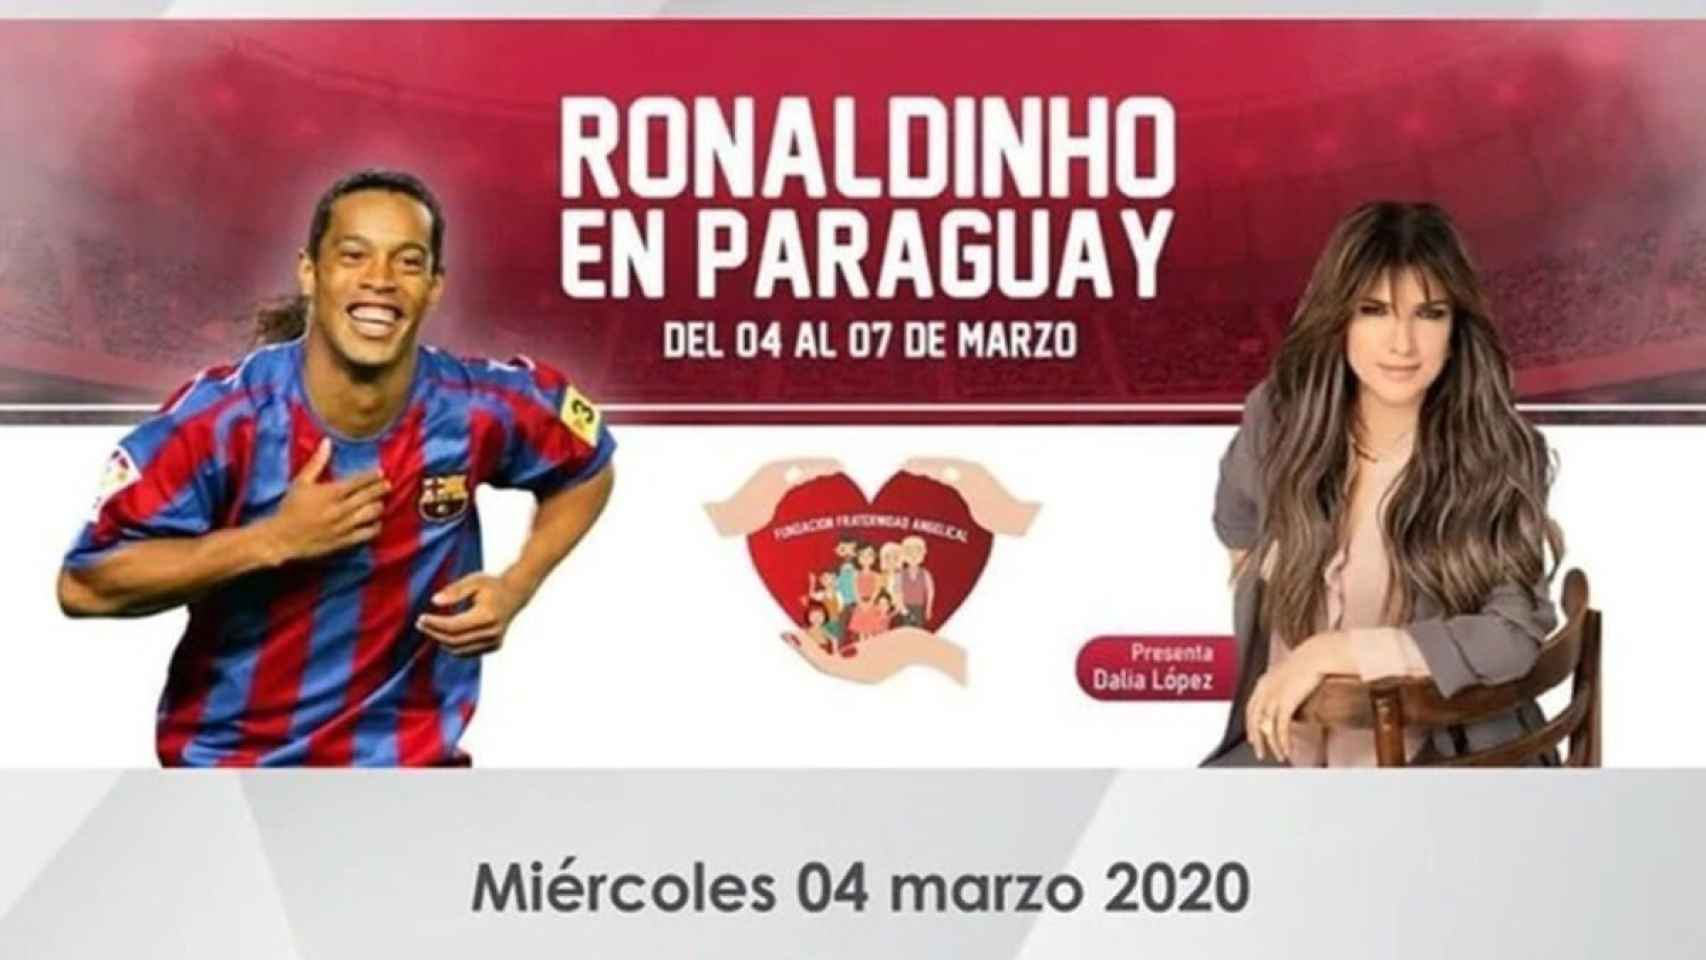 Cartel publicitario de la visita de Ronaldinho a Paraguay